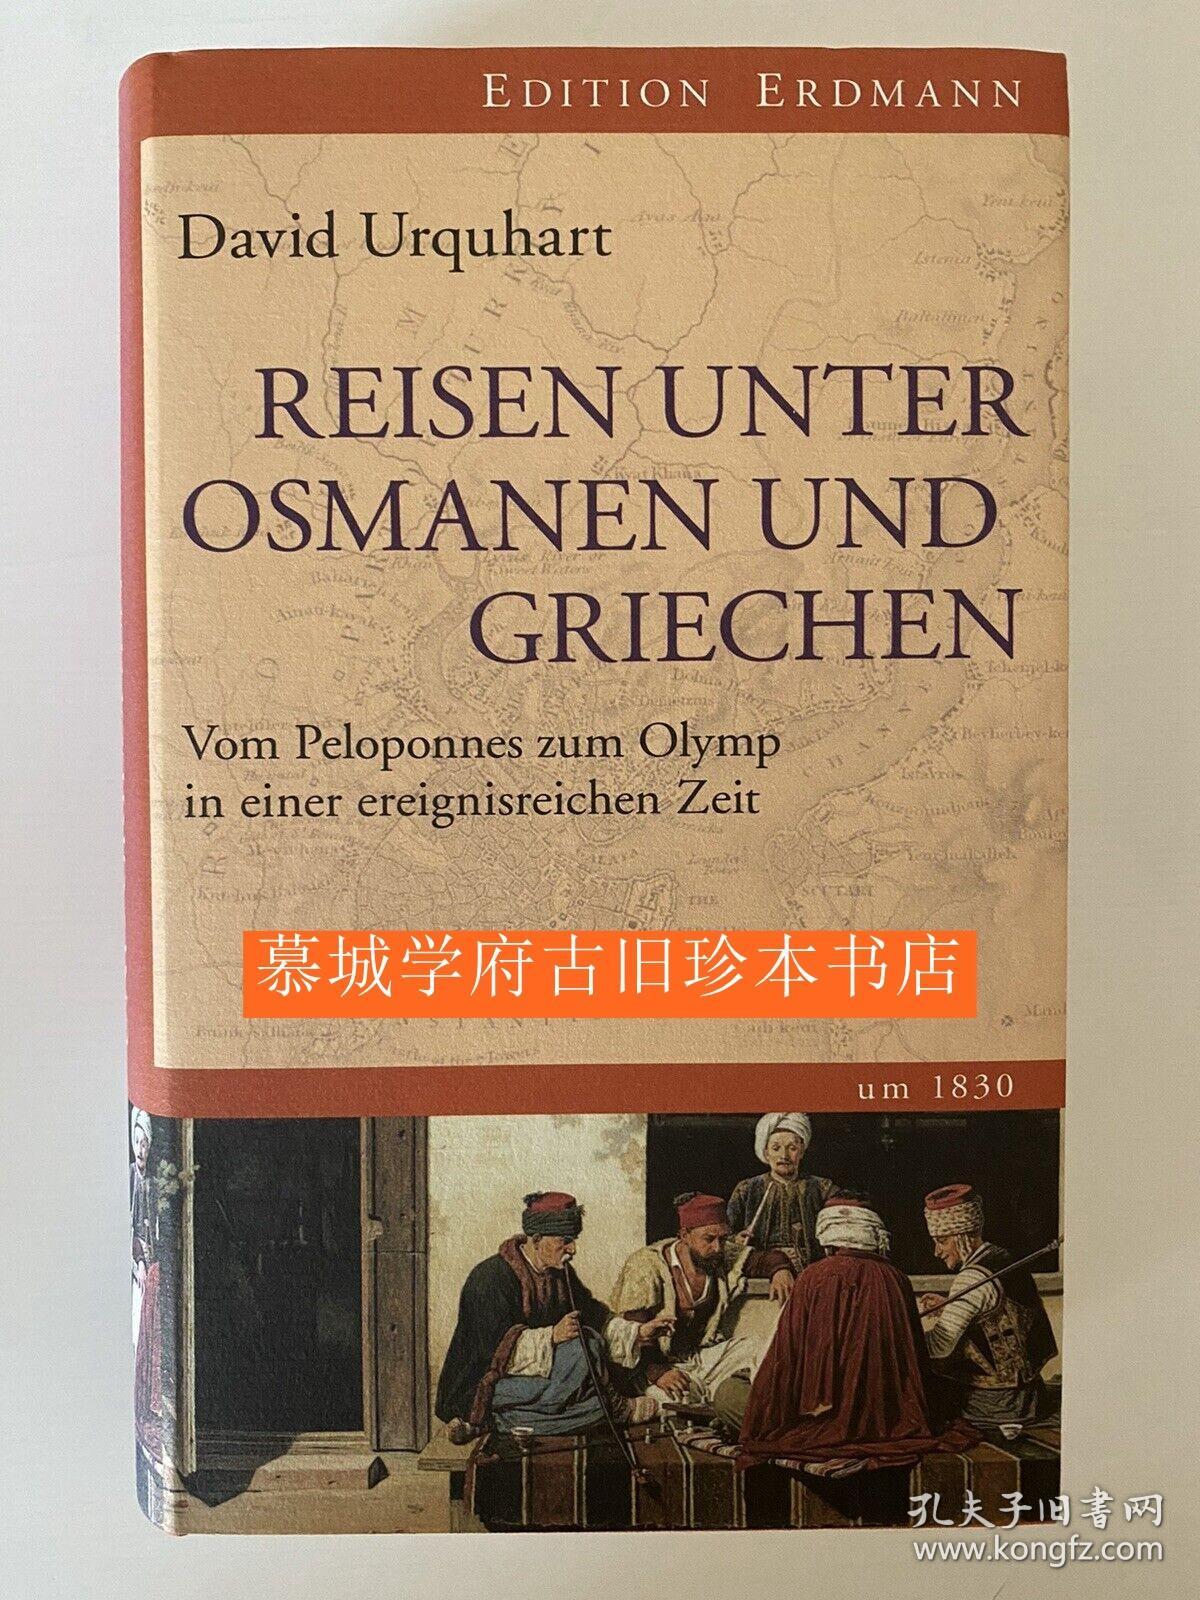 【包邮】【探险考察丛书》插图版《1830年间奥斯曼与希腊之旅》David Urquhart: Reisen unter Osamen und Griechen - Vom Peloponnes zum Olymp in einer erteignesreichen Zeit um 1830. EDITION ERDMANN